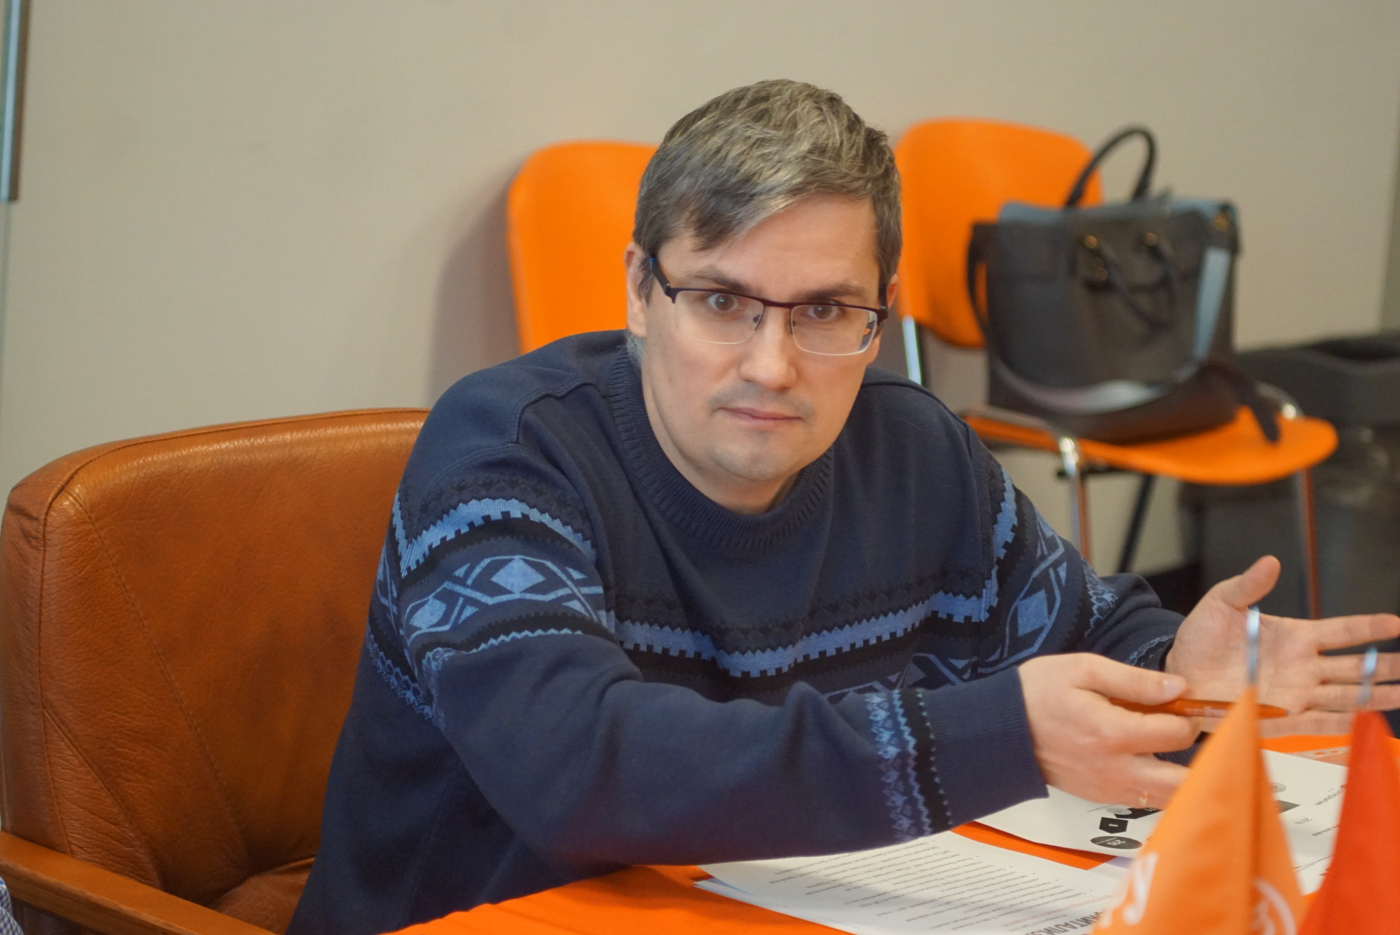 Макаров Иван Иванович — Пресс-секретарь банка «Открытие» по Северо-Западному федеральному округу